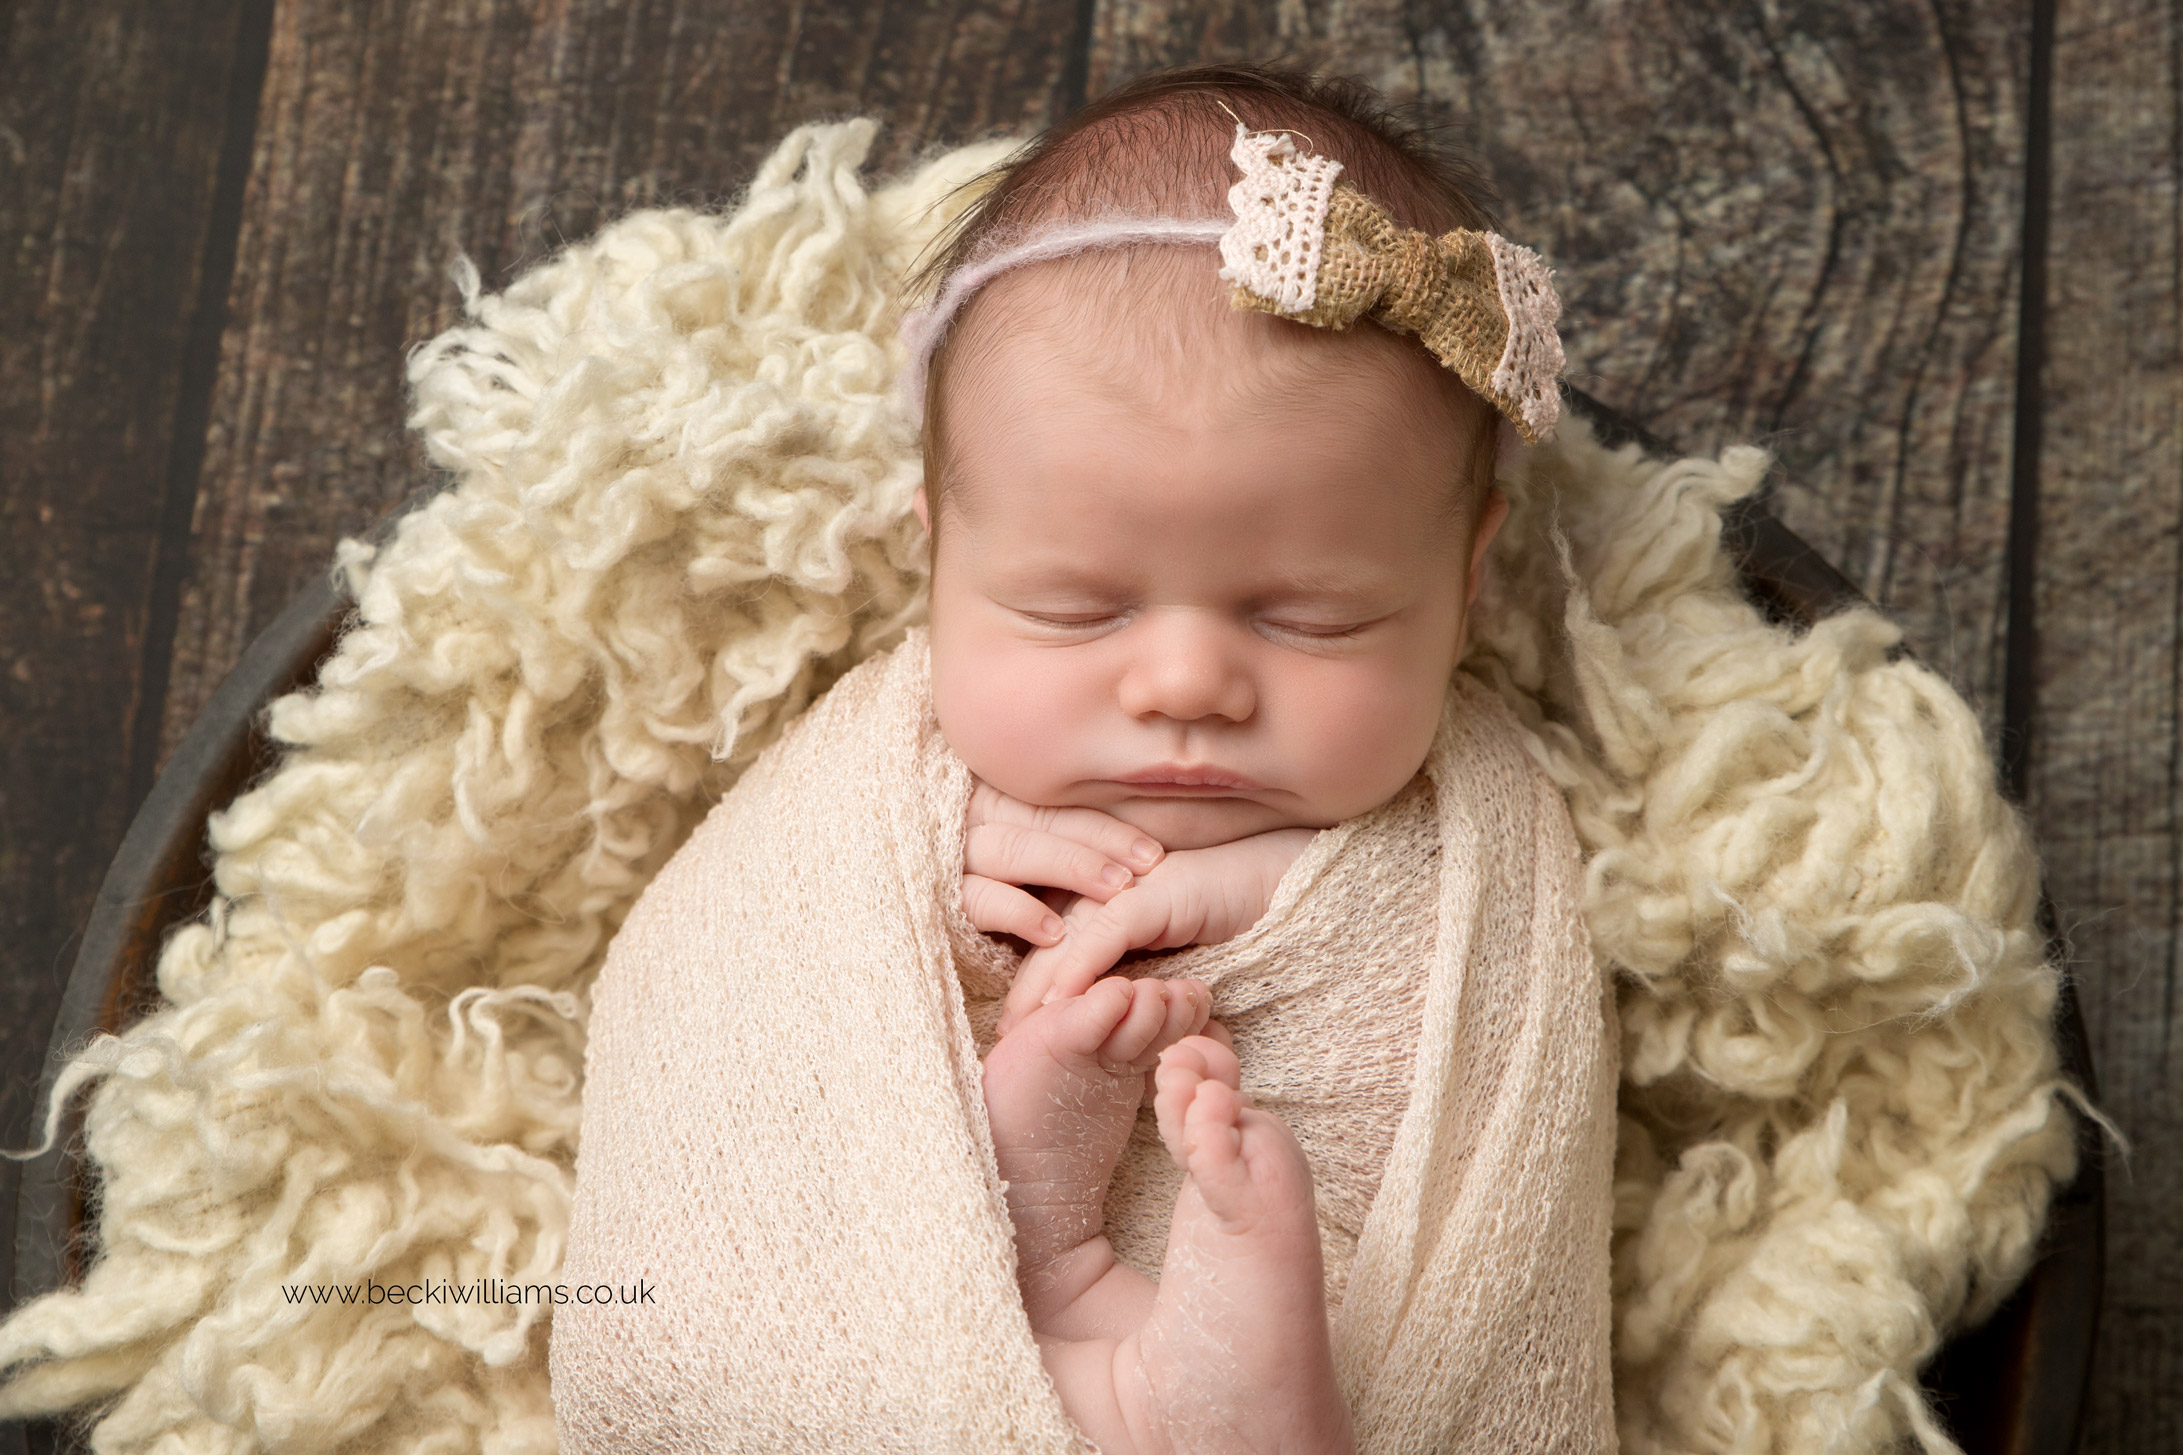 photographer-in-hemel-hempstead-newborn-baby-girl-asleep-10.jpg